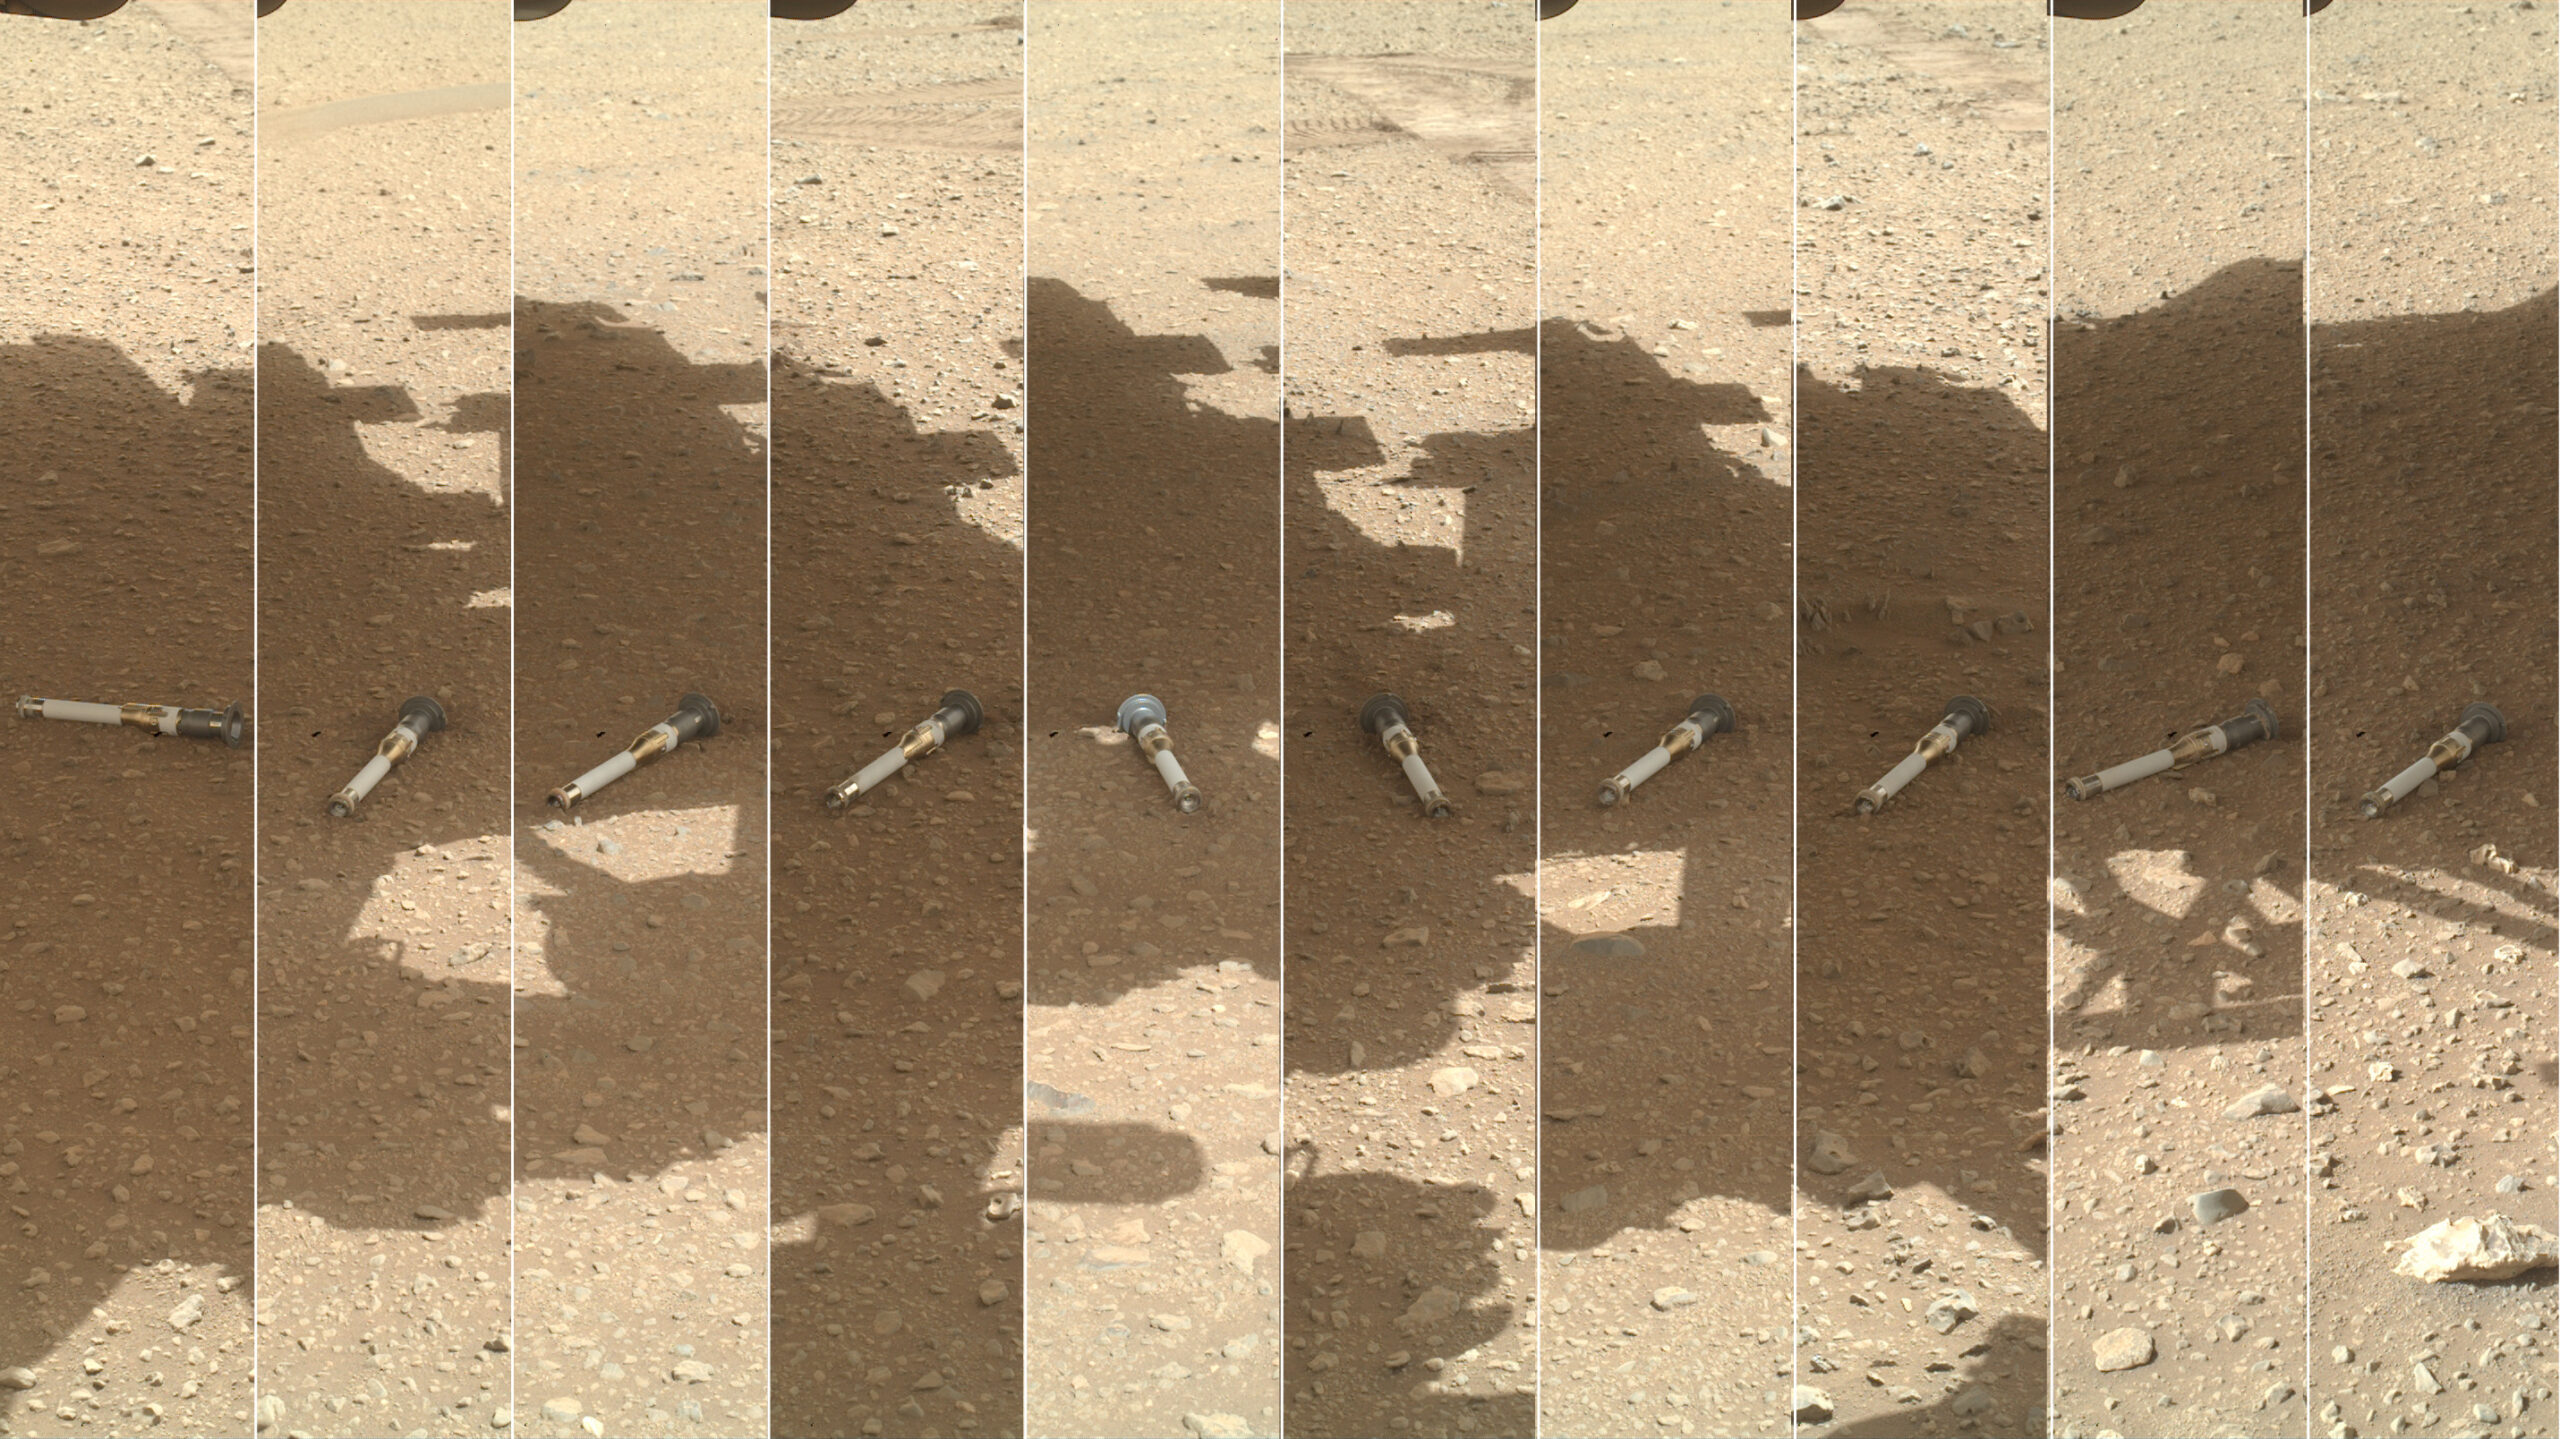 Imagen histórica: las primeras muestras de Marte que volverán a la Tierra